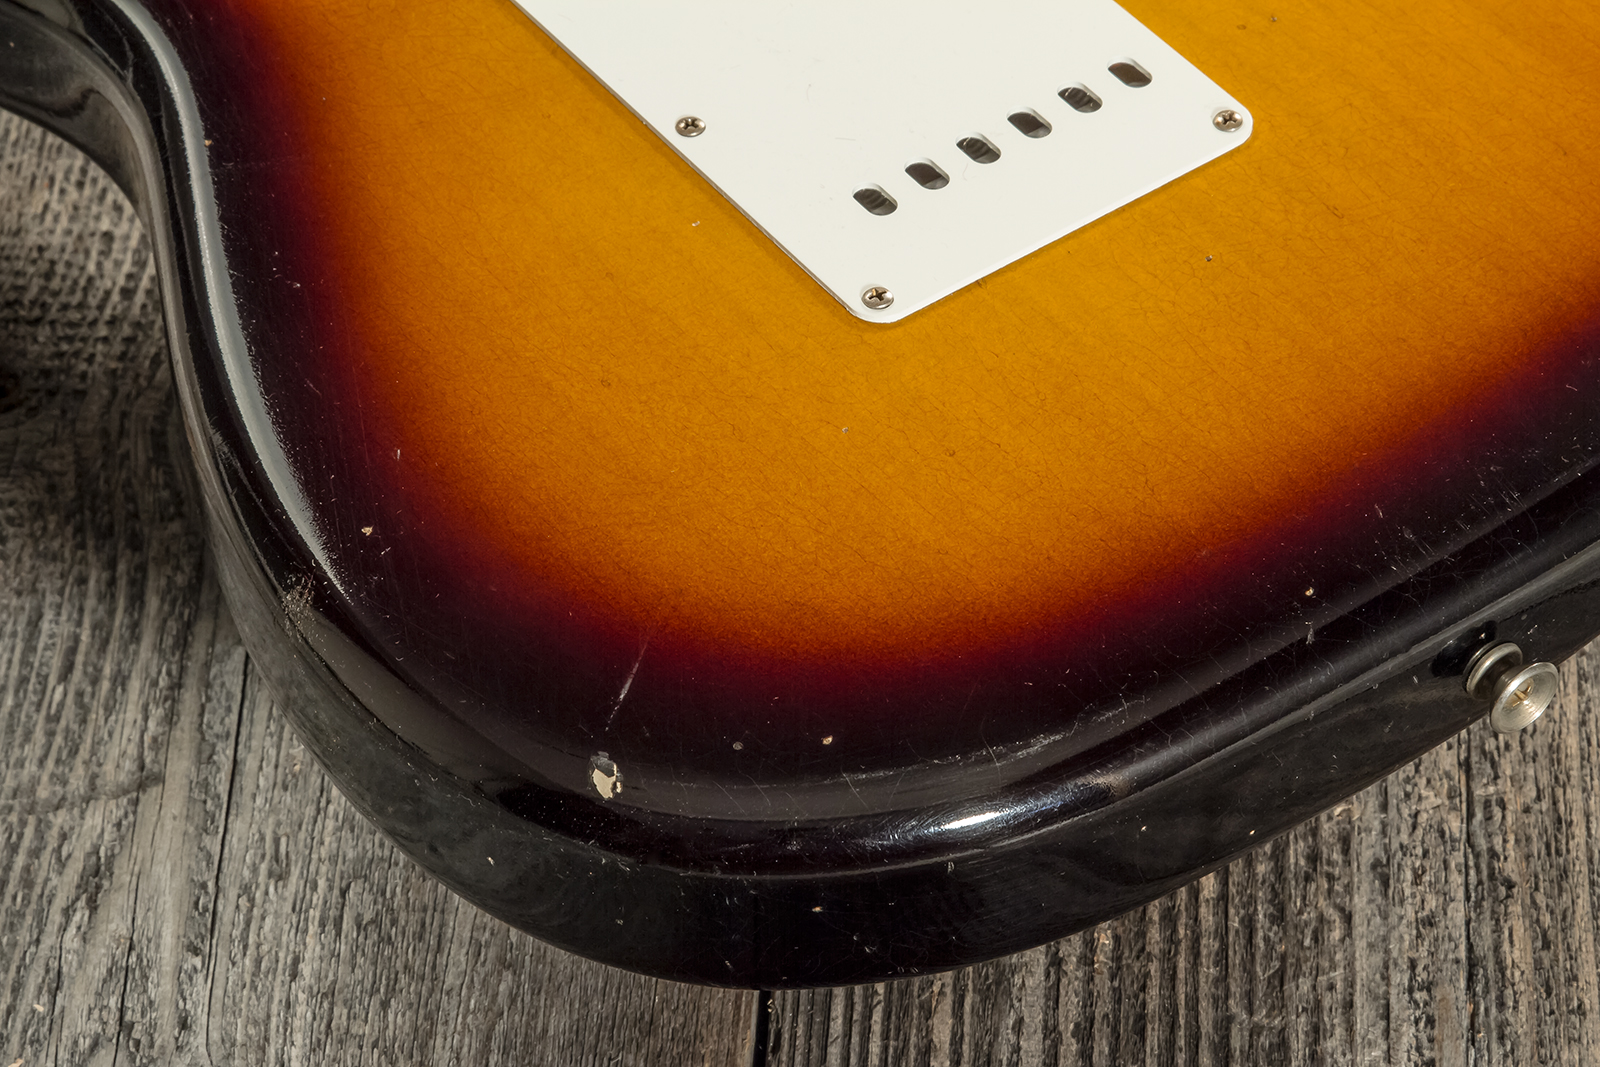 Fender Custom Shop Strat 1956 3s Trem Mn #cz571884 - Journeyman Relic Aged 2-color Sunburst - E-Gitarre in Str-Form - Variation 7